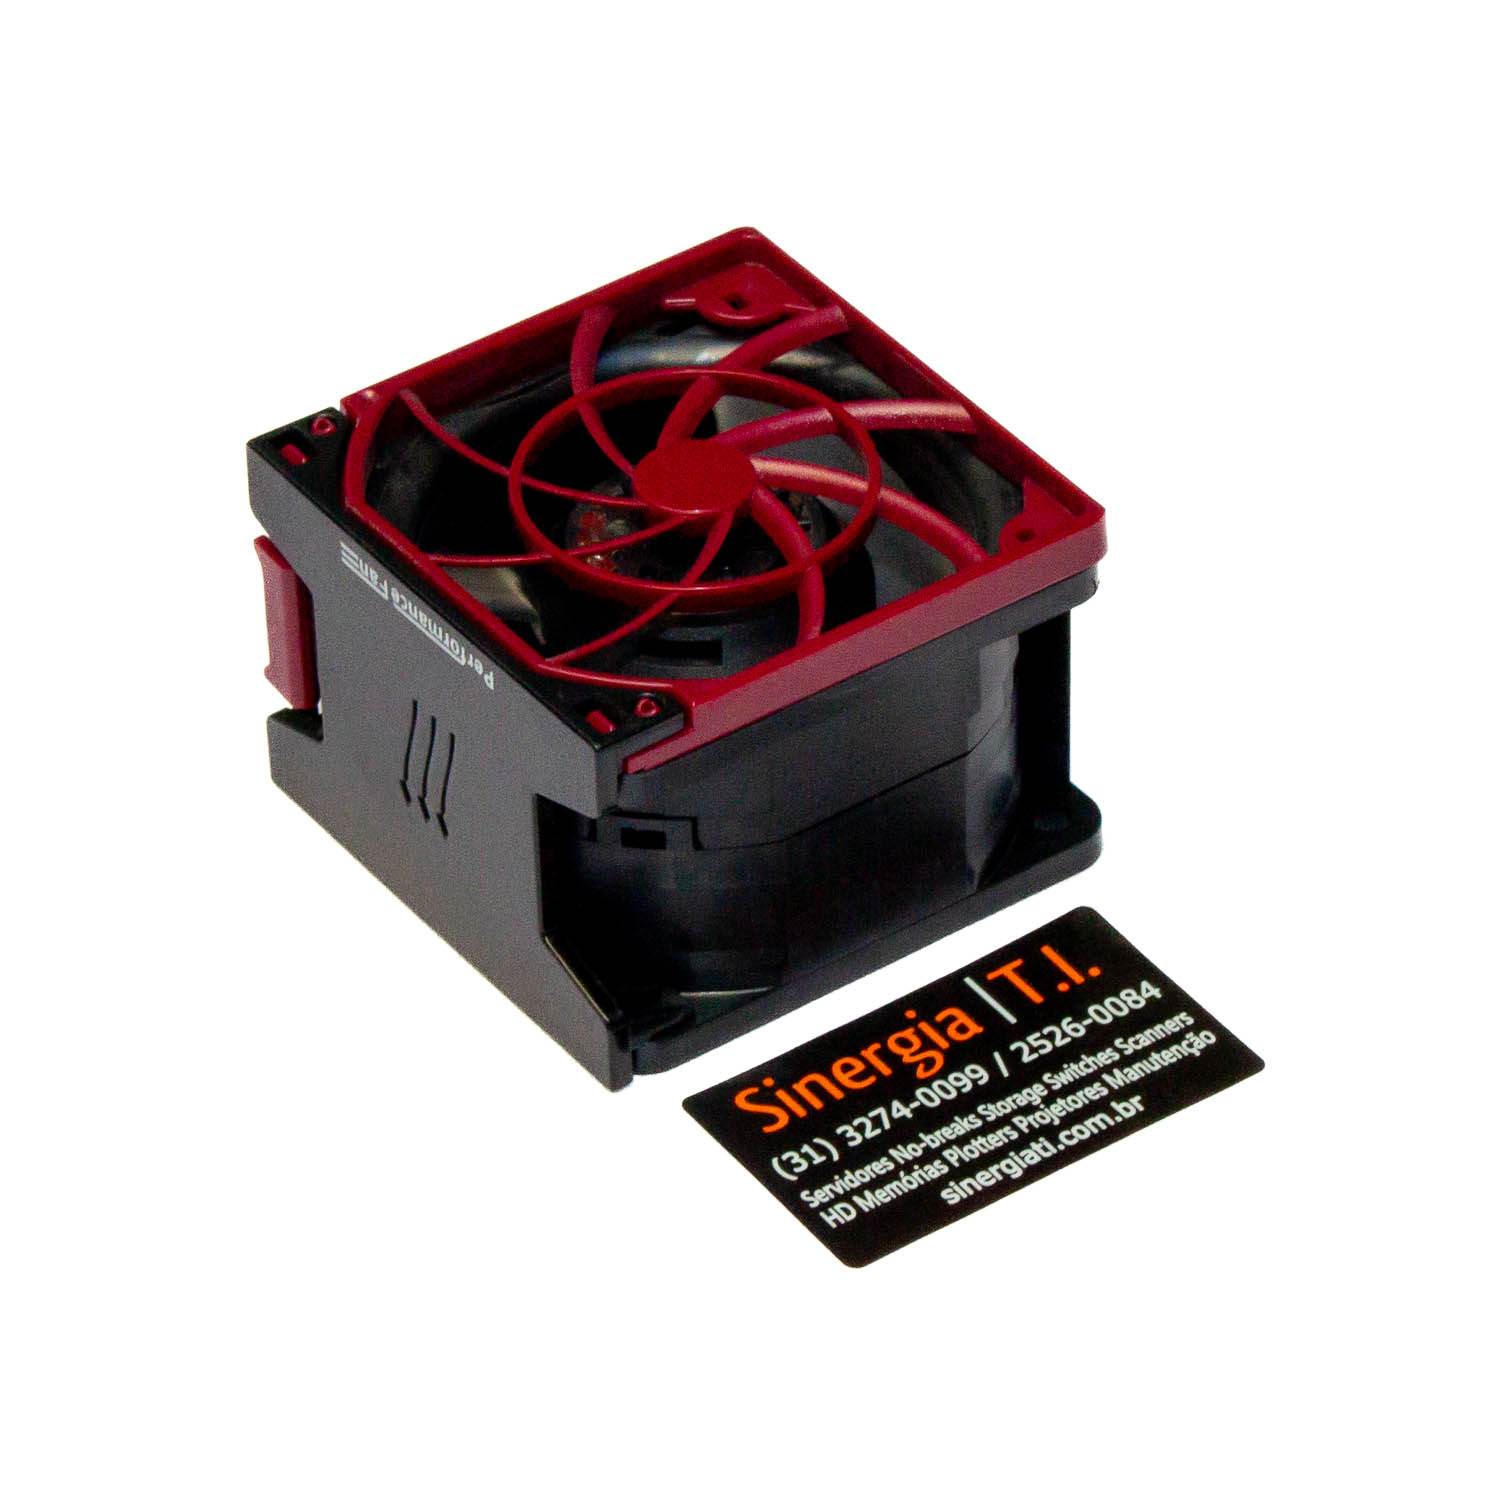 NIDEC UltraFLO Fan Cooler Servidores HP DL380p Gen8 Hot Plug pronta entrega